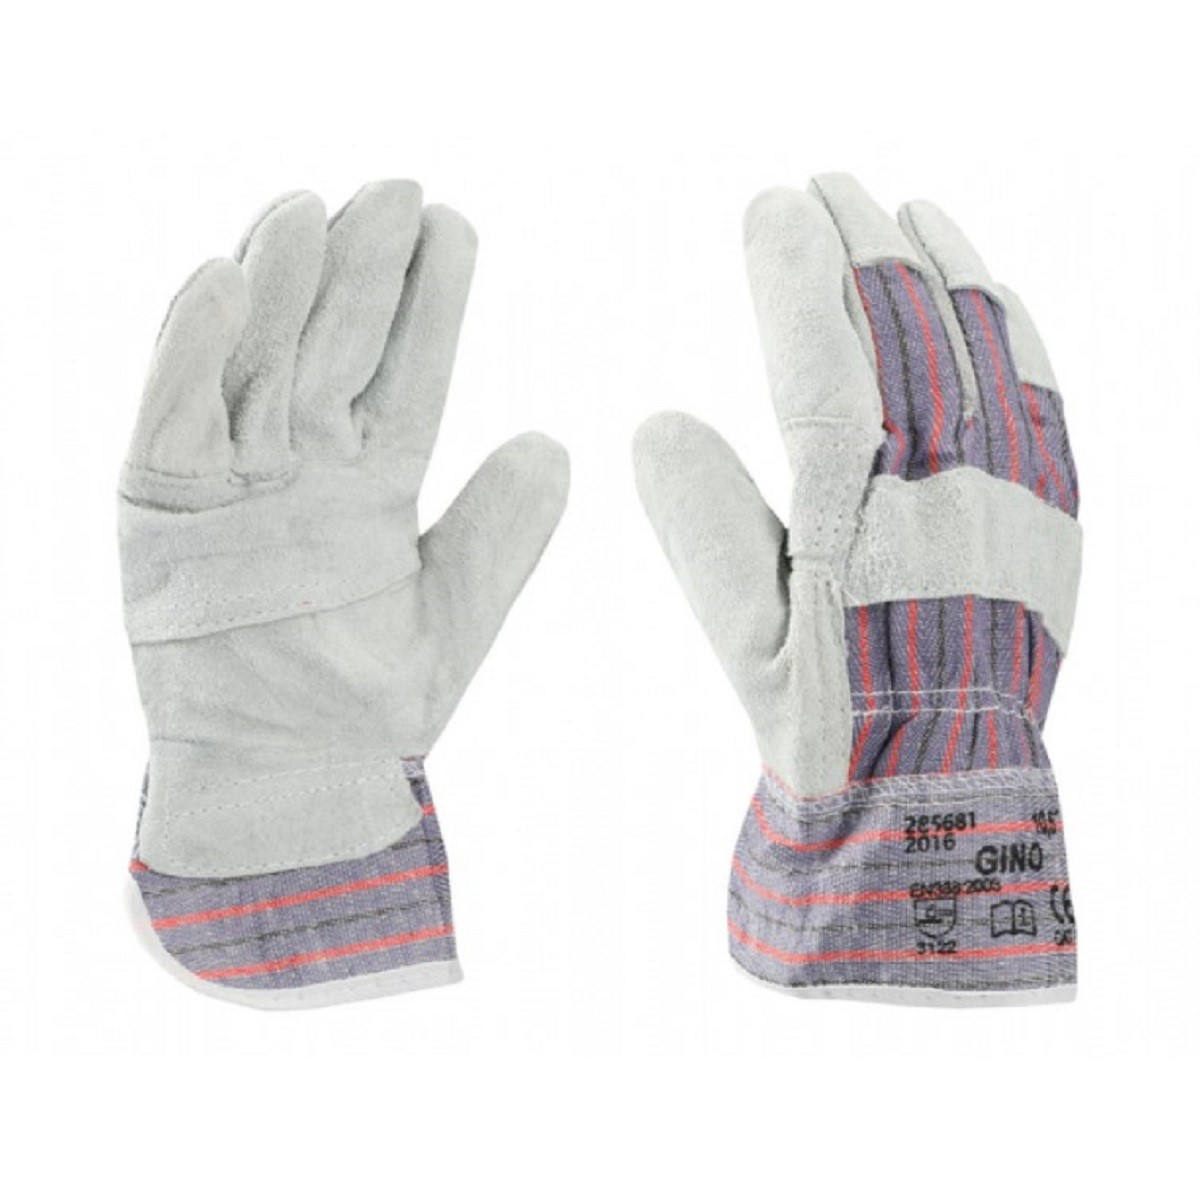 Pracovní rukavice GINO - velikost 10 - 1 ks